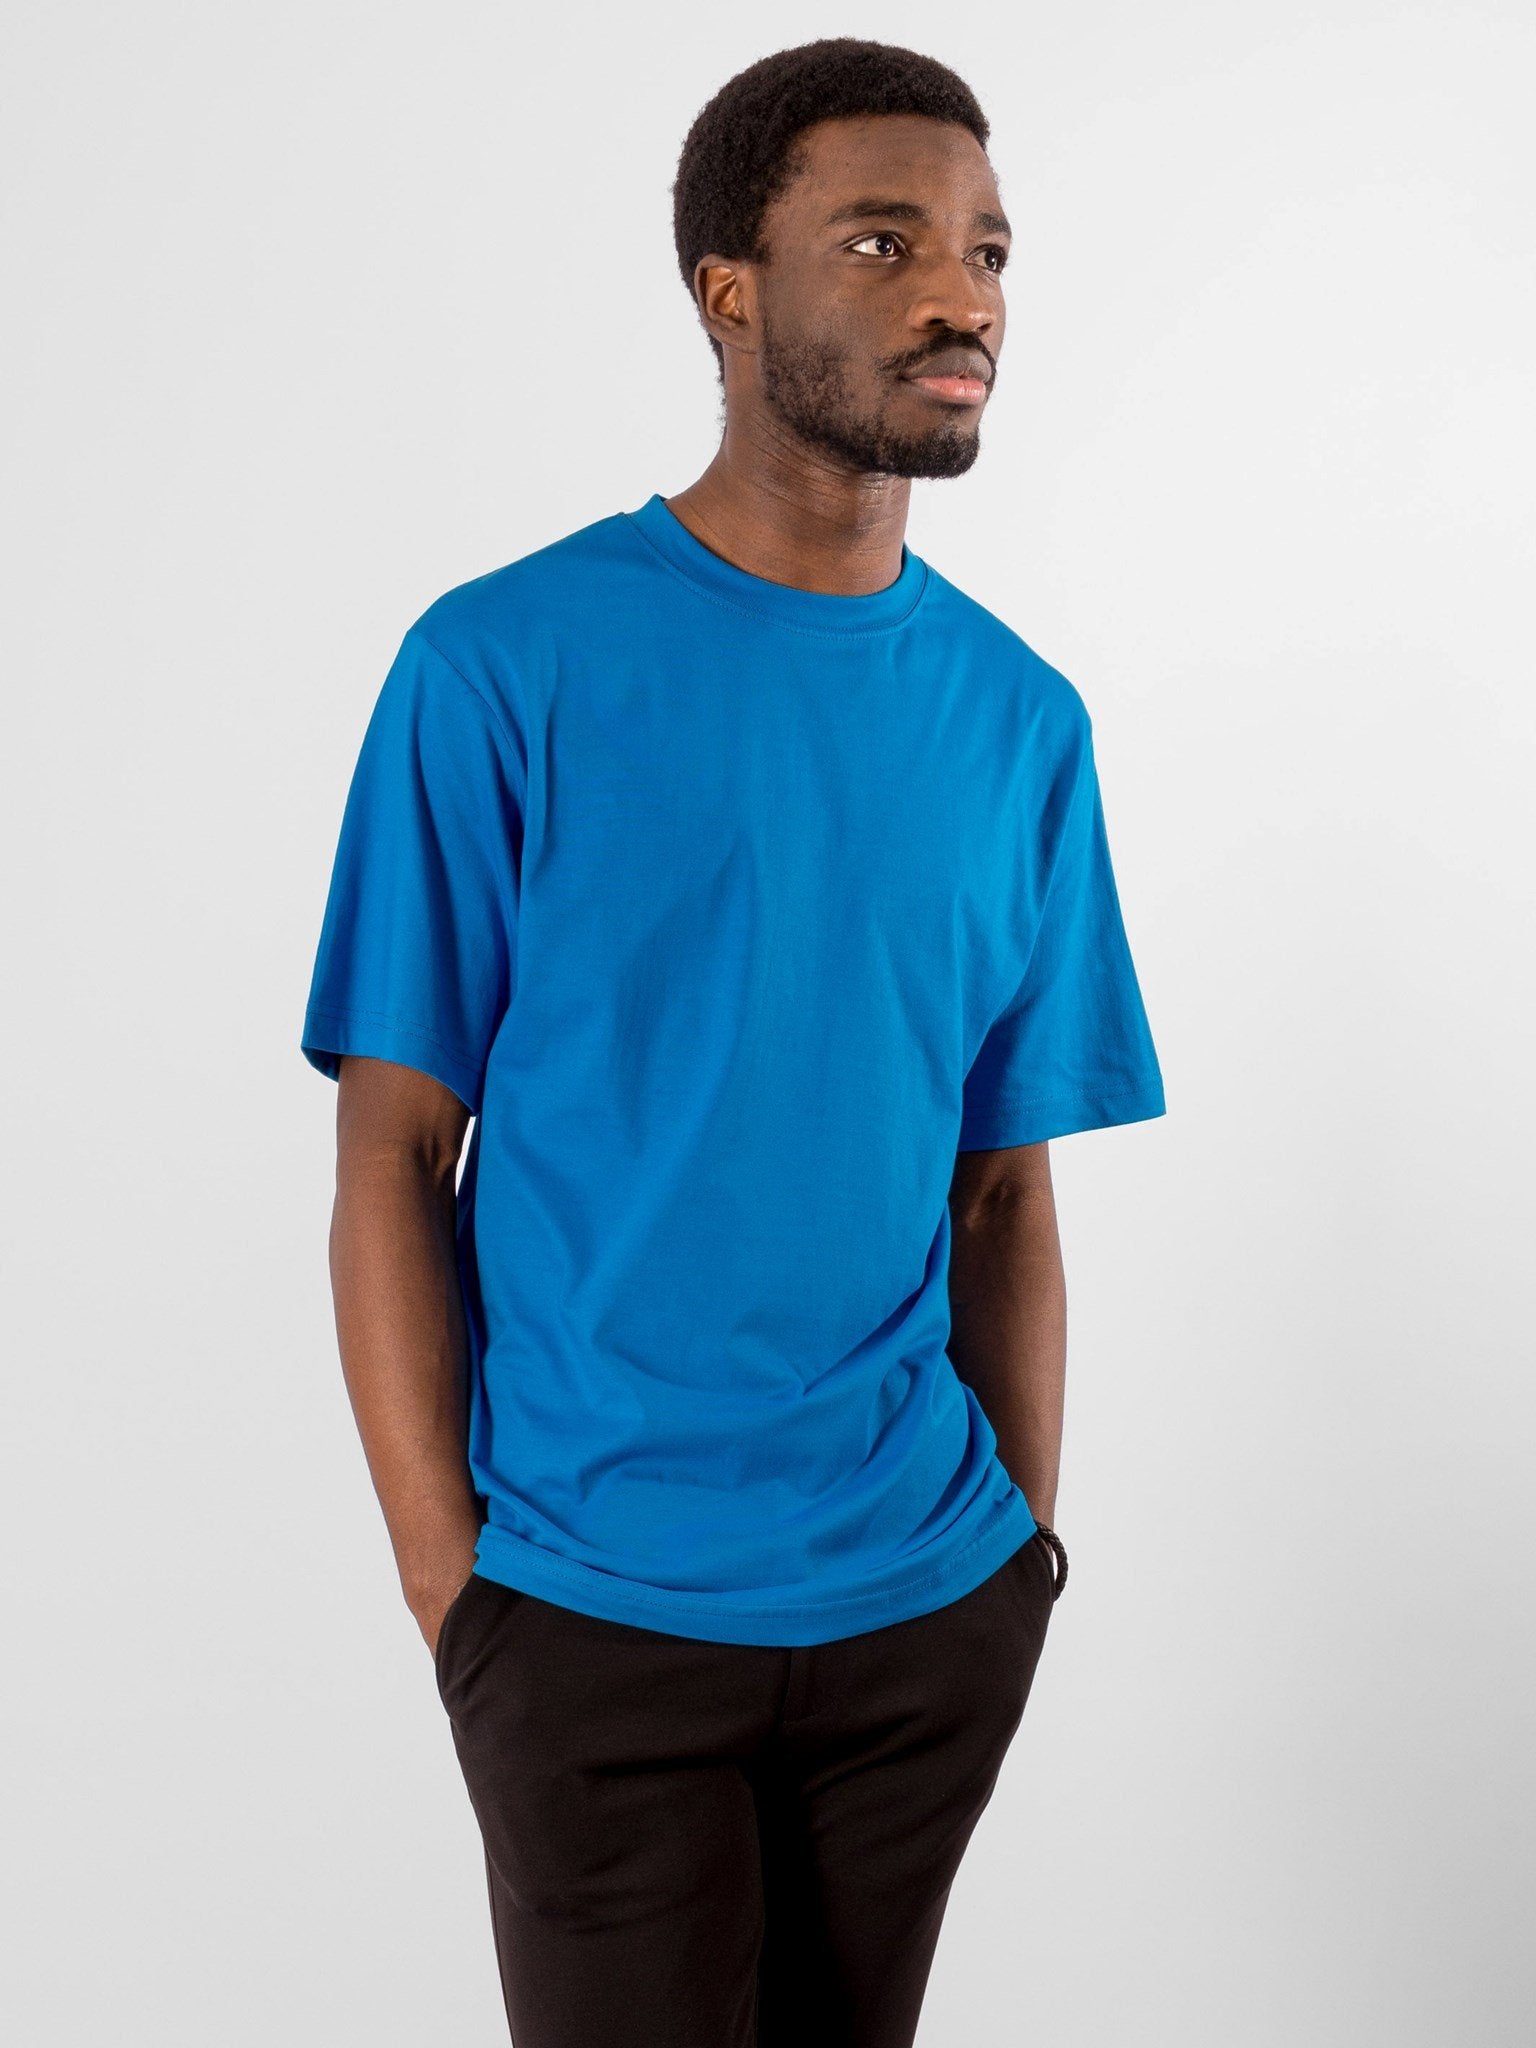 Oversized T-shirt - Turkis Blå TeeShoppen Erhverv